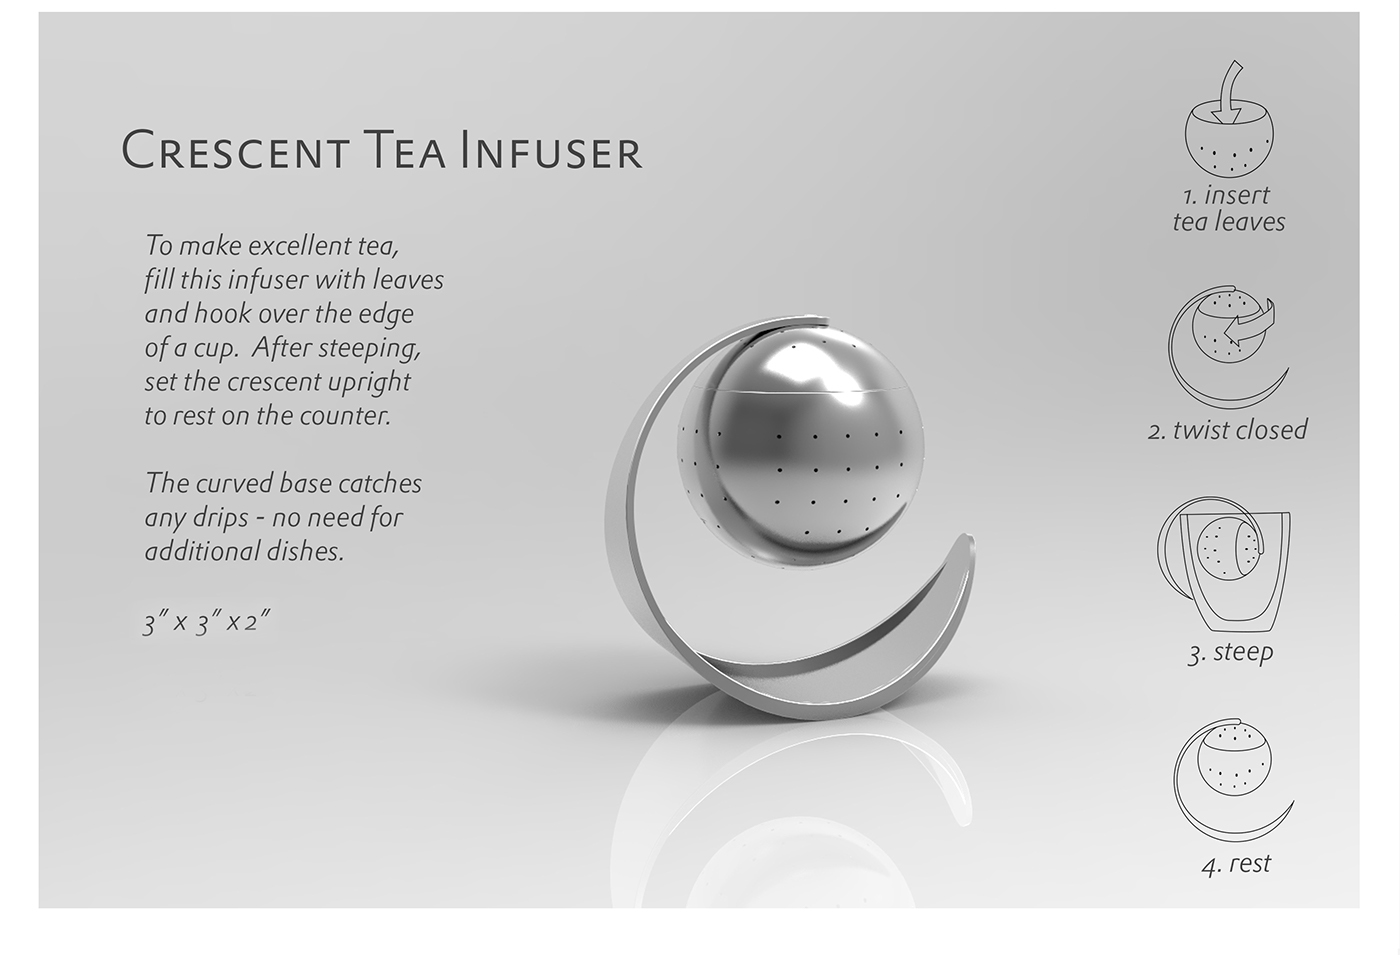 tea Infuser crescent metal steep tea infuser